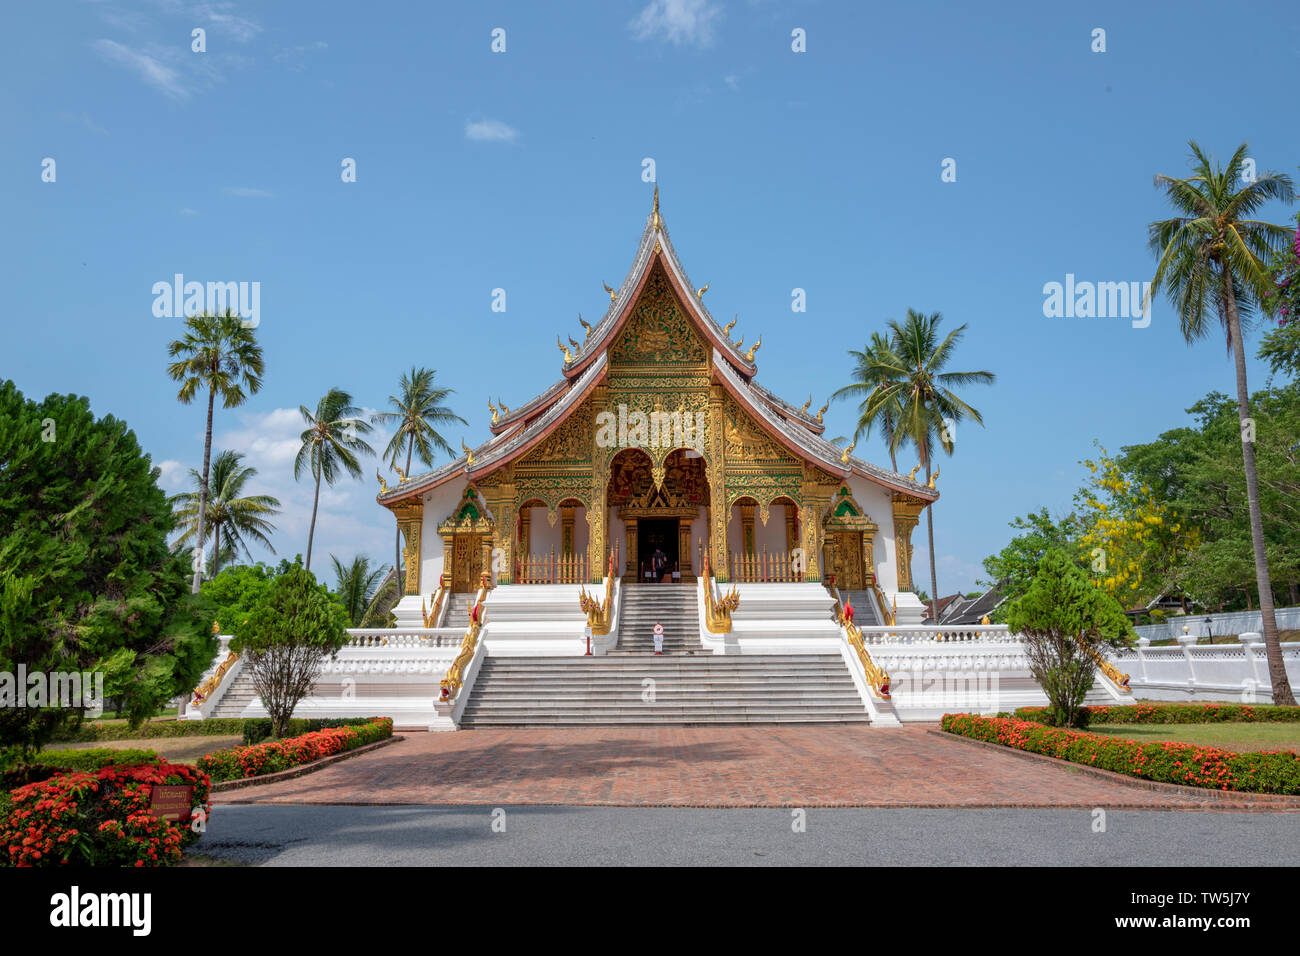 Haw Pha Bang inluang Prabang Laos Temple Banque D'Images